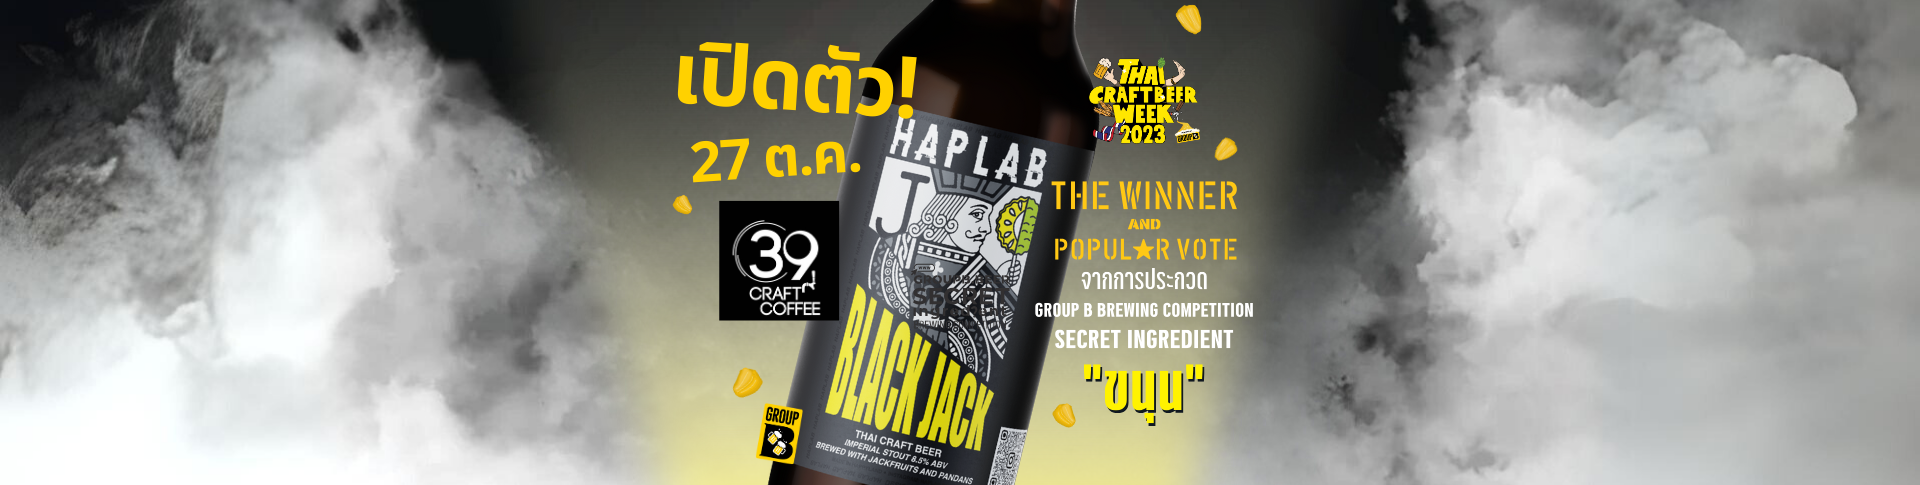 เปิดตัวเบียร์ Haplab @39 Craft